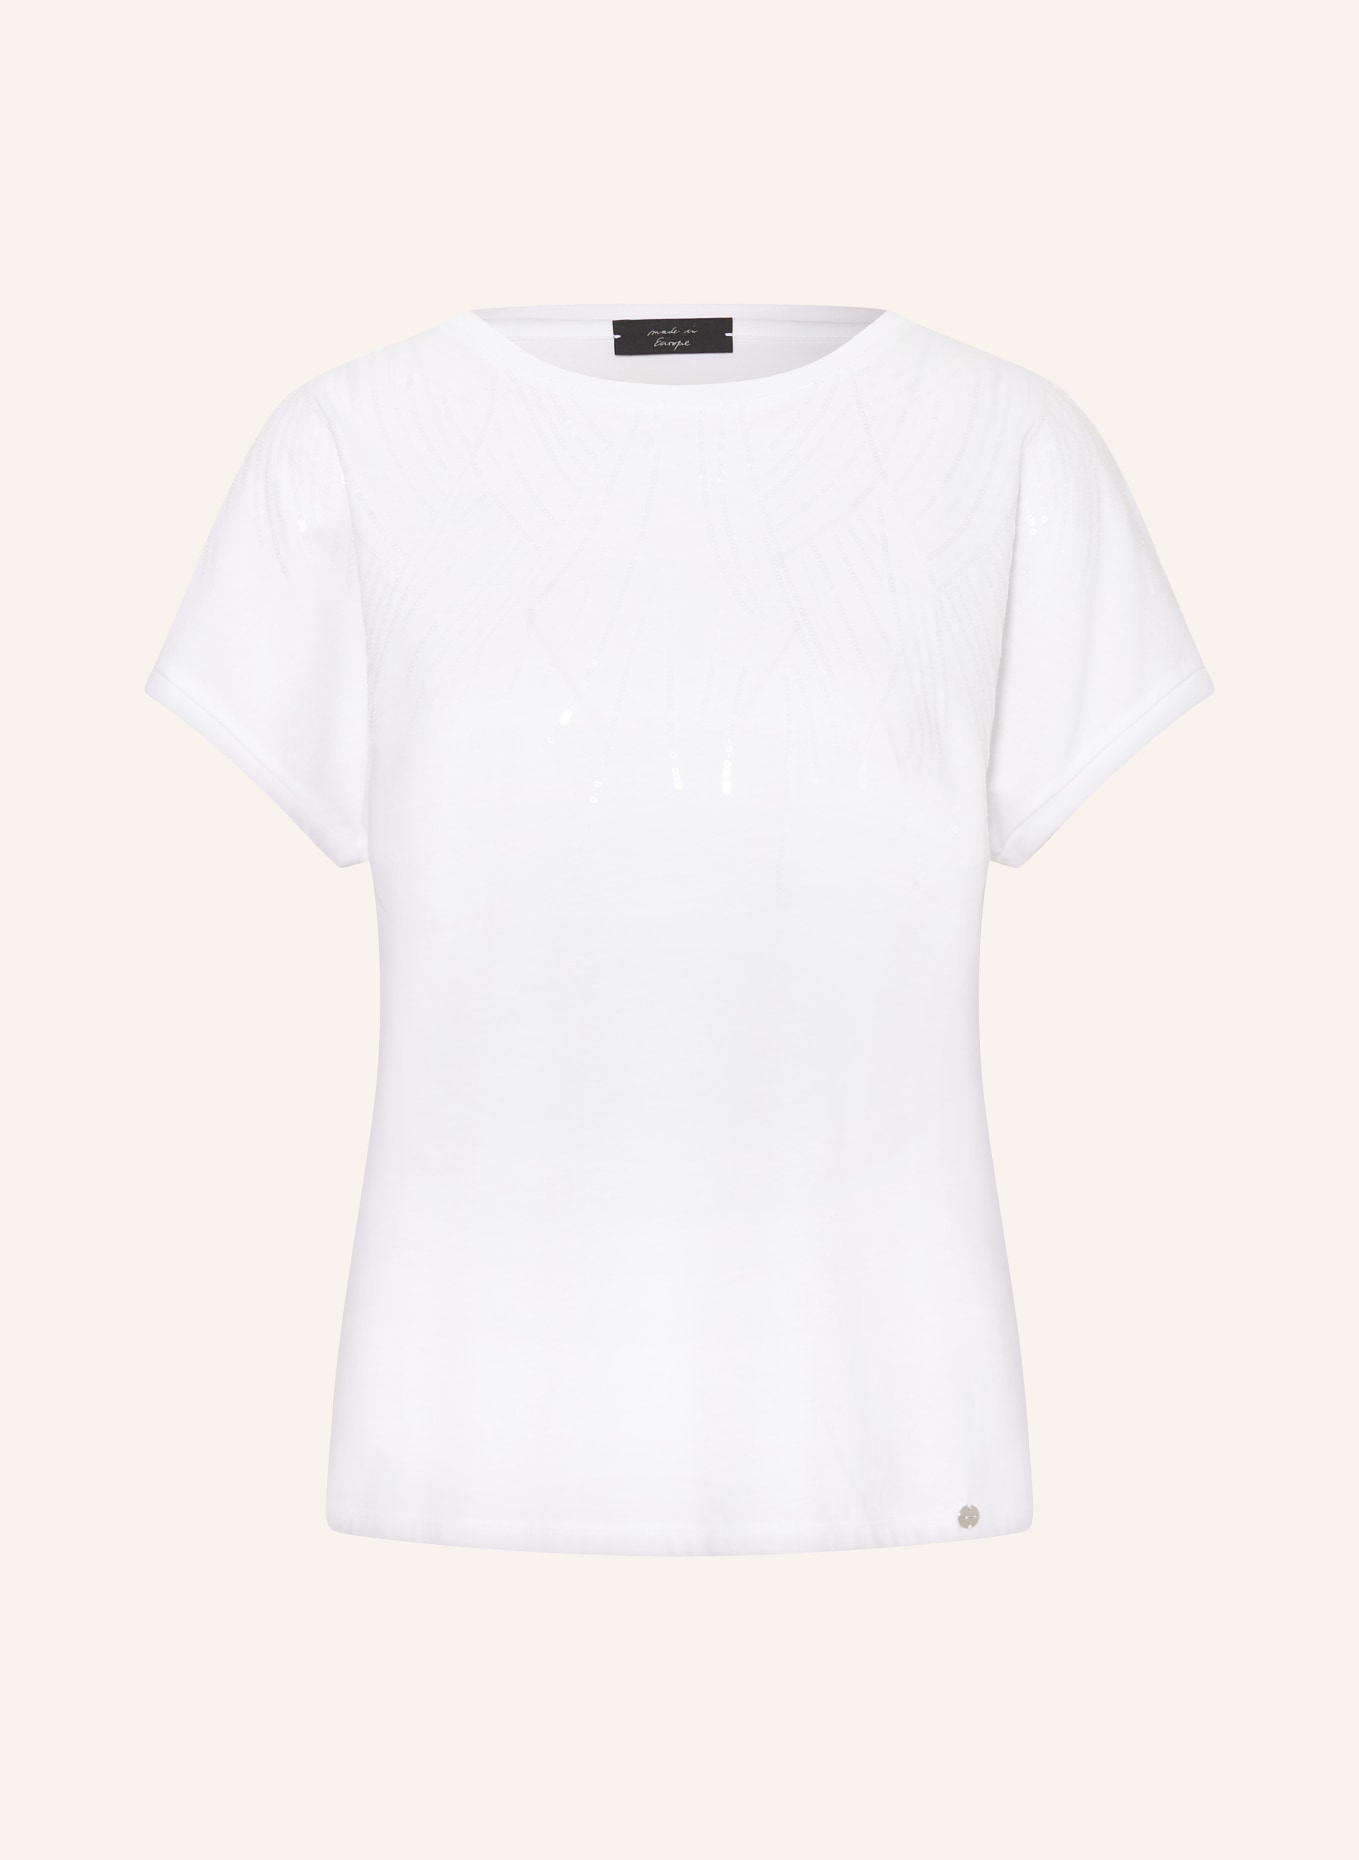 MARC CAIN T-Shirt mit Pailletten, Farbe: 100 WHITE (Bild 1)